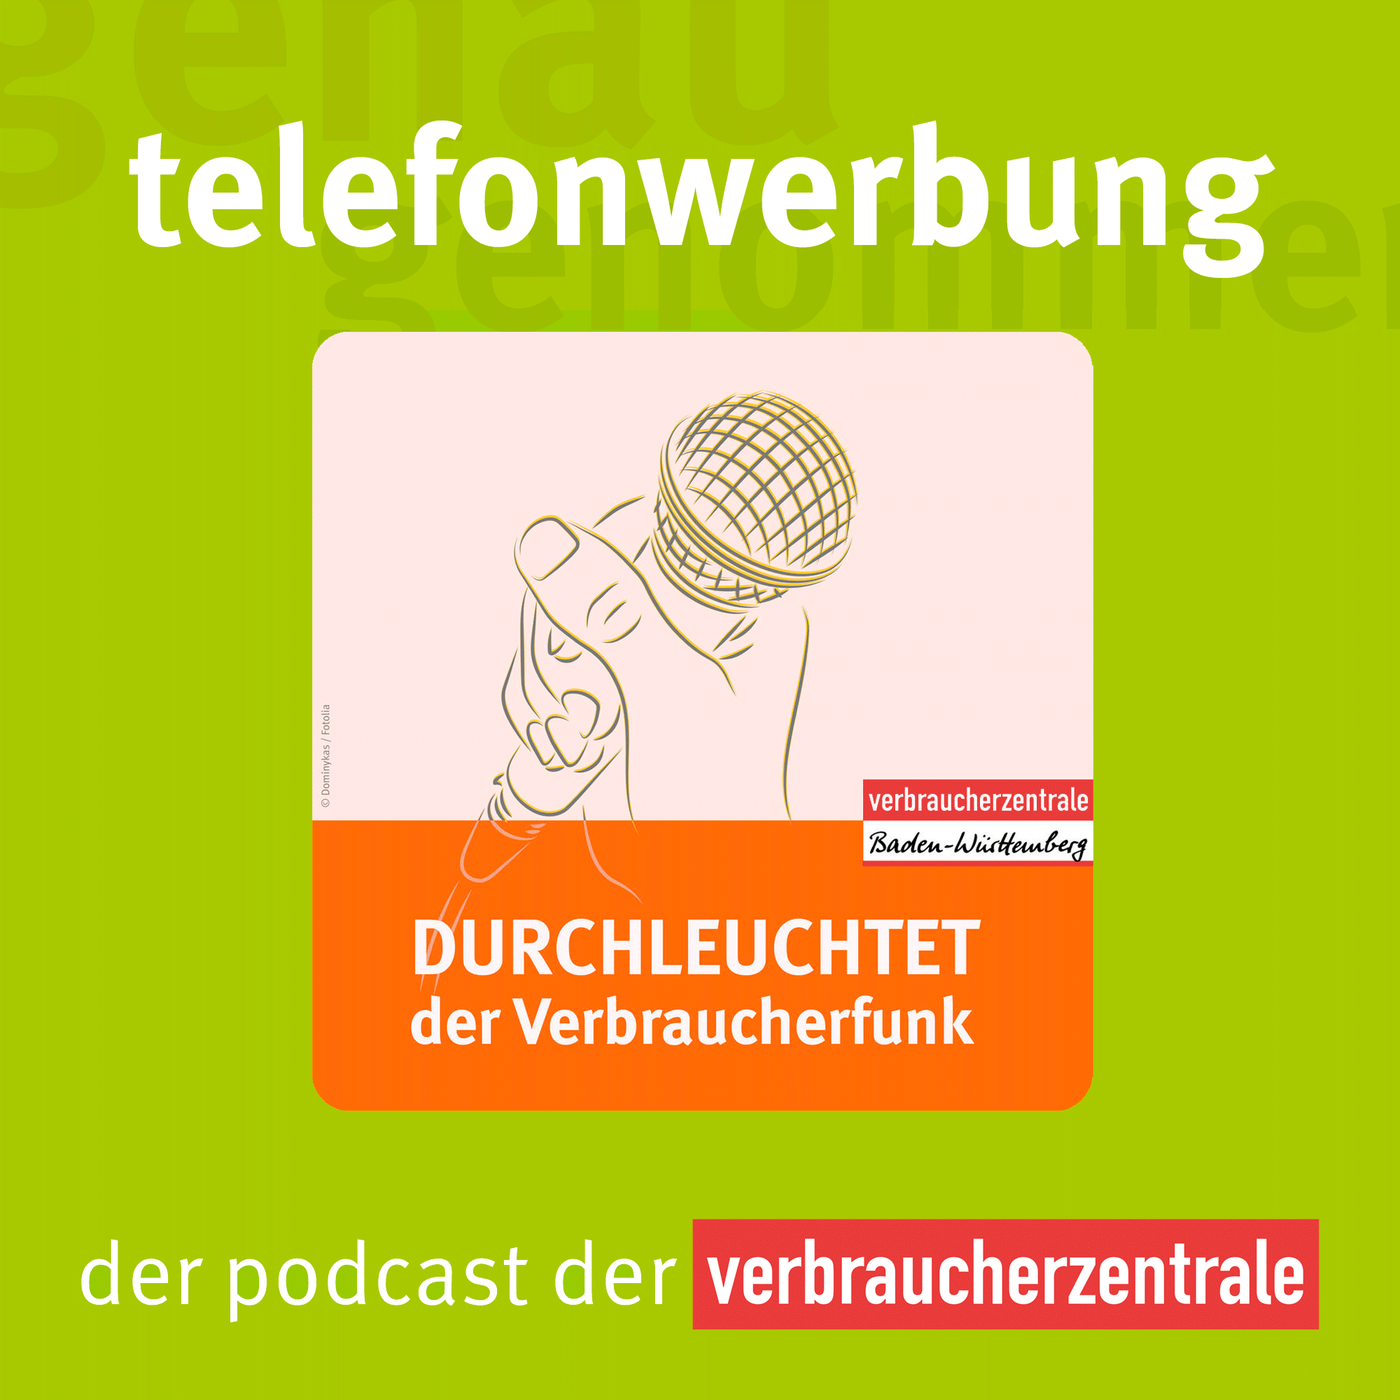 Telefonwerbung (Bonusfolge der VZ Baden-Württemberg)